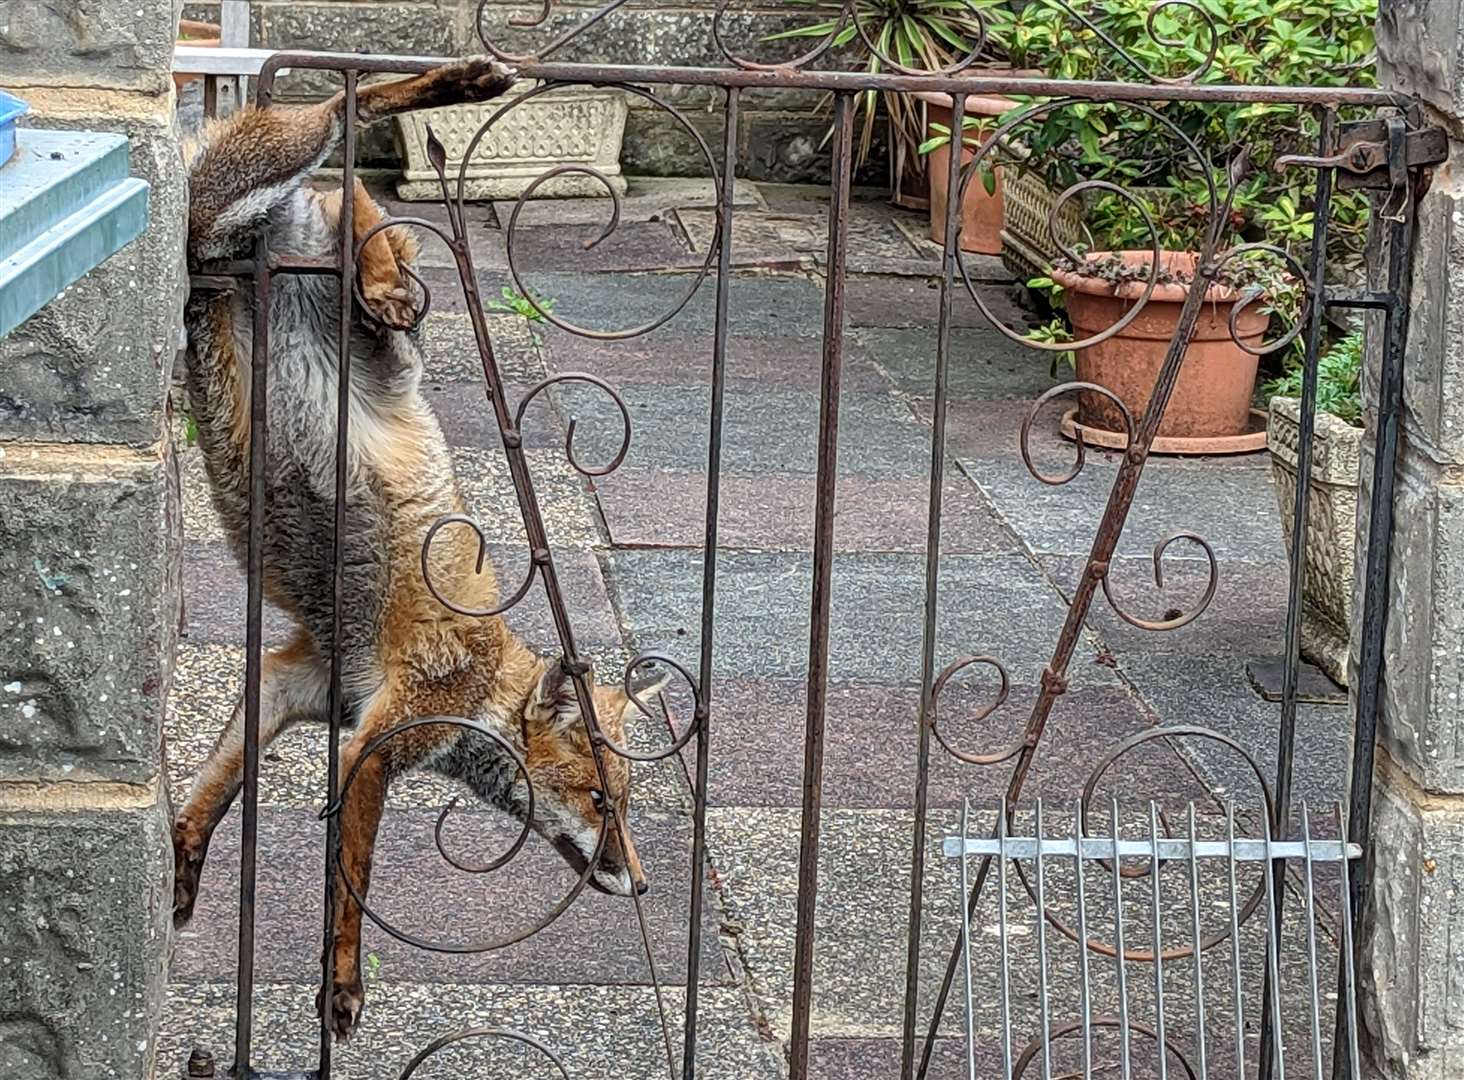 A fox which got stuck in a gate in Sevenoaks